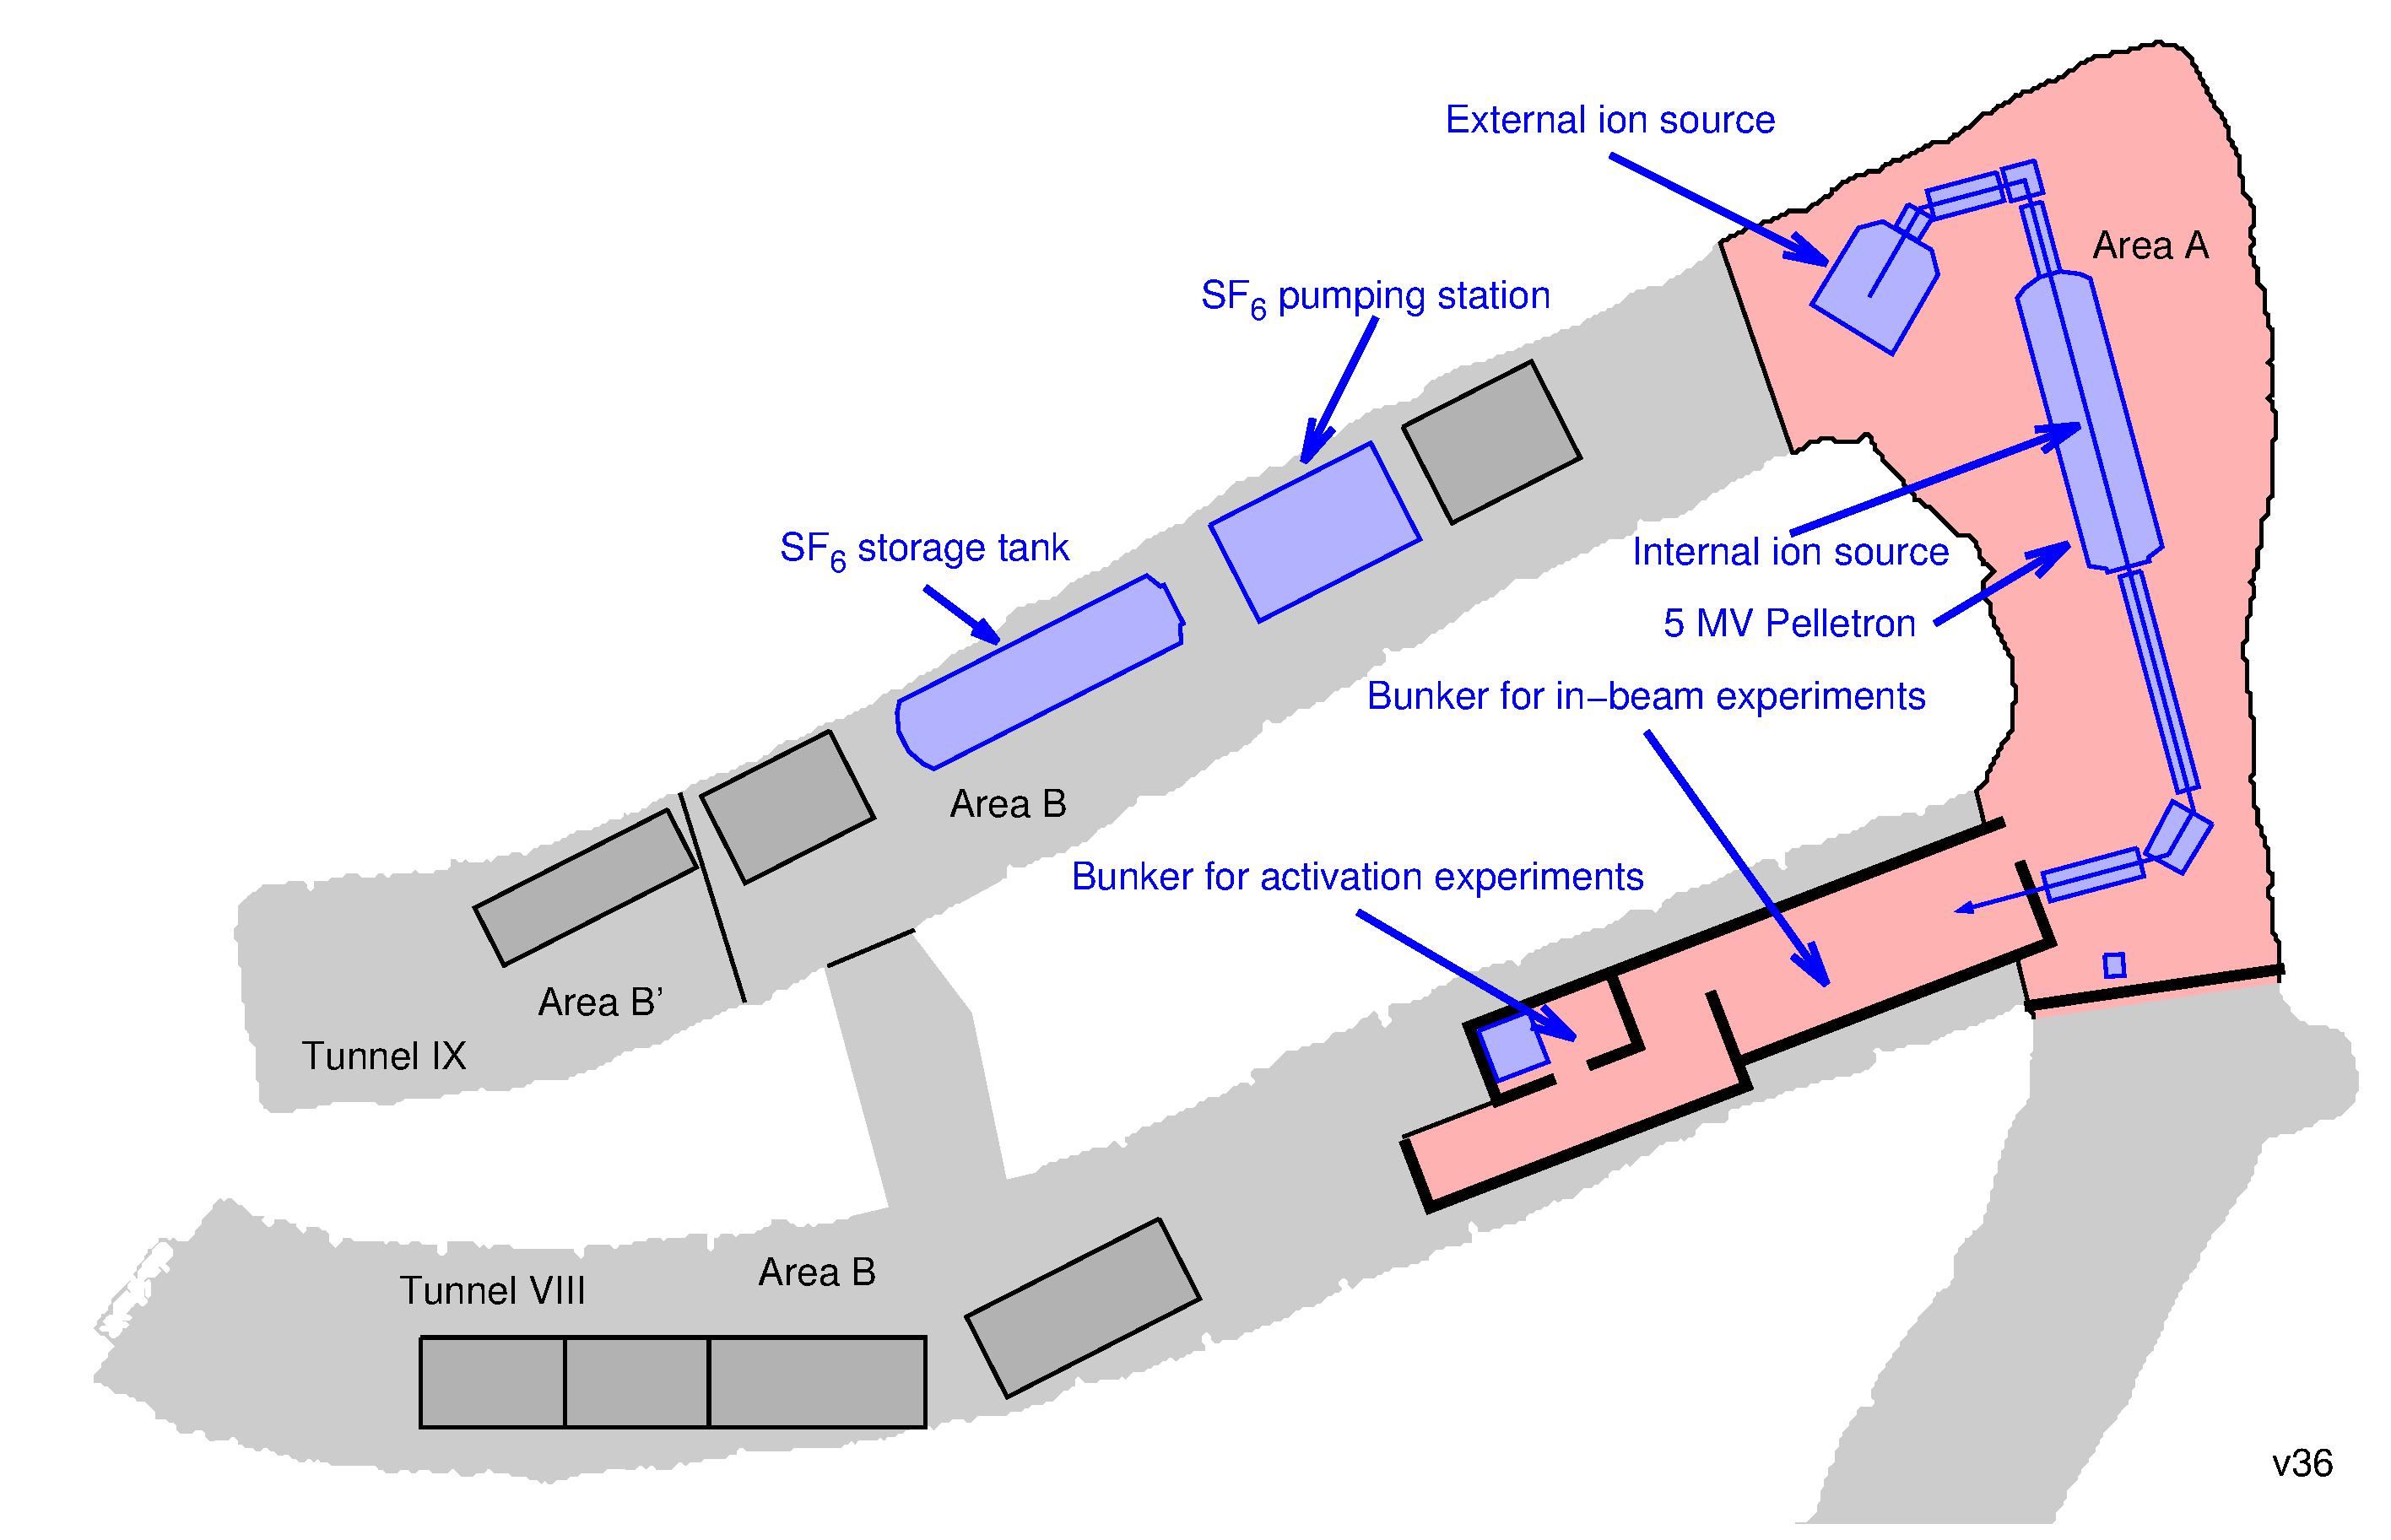 Felsenkeller, layout of tunnels VIII and IX ©Copyright: PD Dr. Bemmerer, Daniel